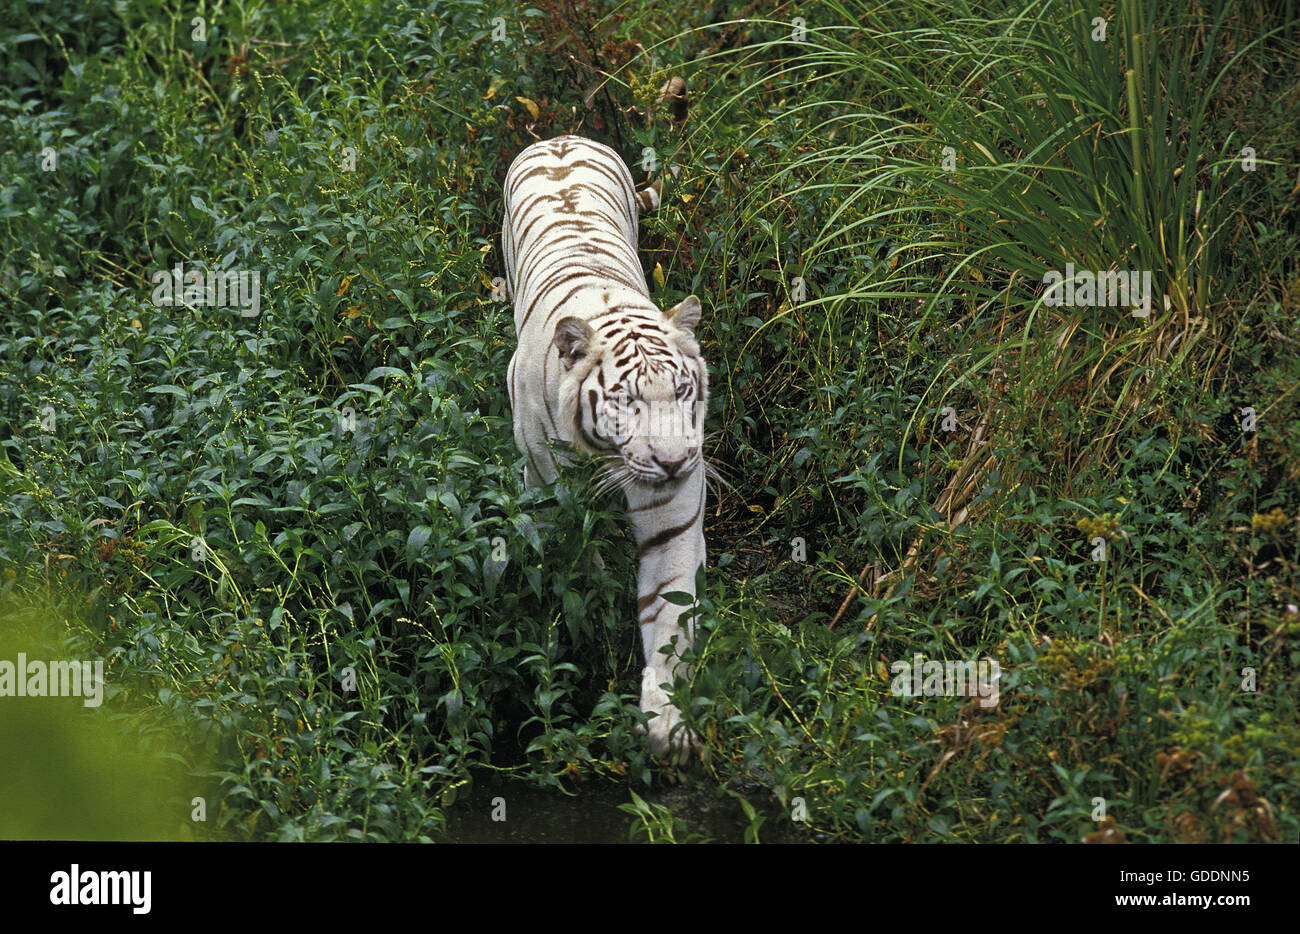 White Tiger, panthera tigris Stock Photo